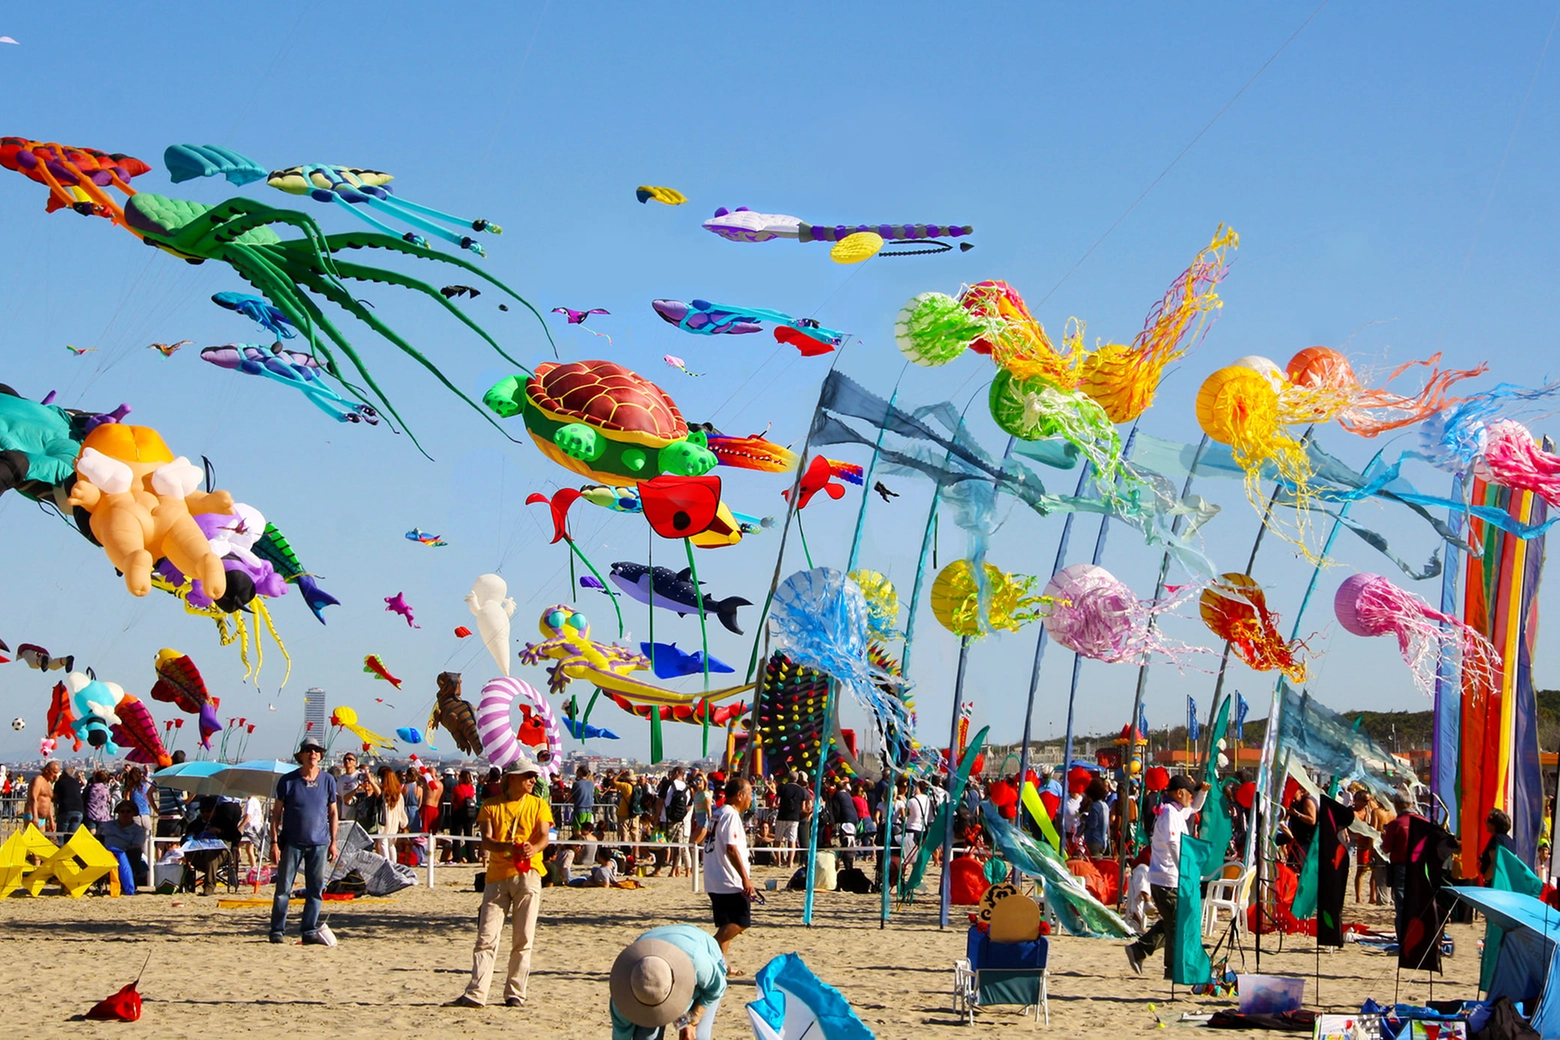 Festival degli aquiloni a Cervia, dal 21 aprile al 1 maggio tantissimi eventi dedicati all'arte eolica adatti a grandi e piccini (foto: F. Perletti))